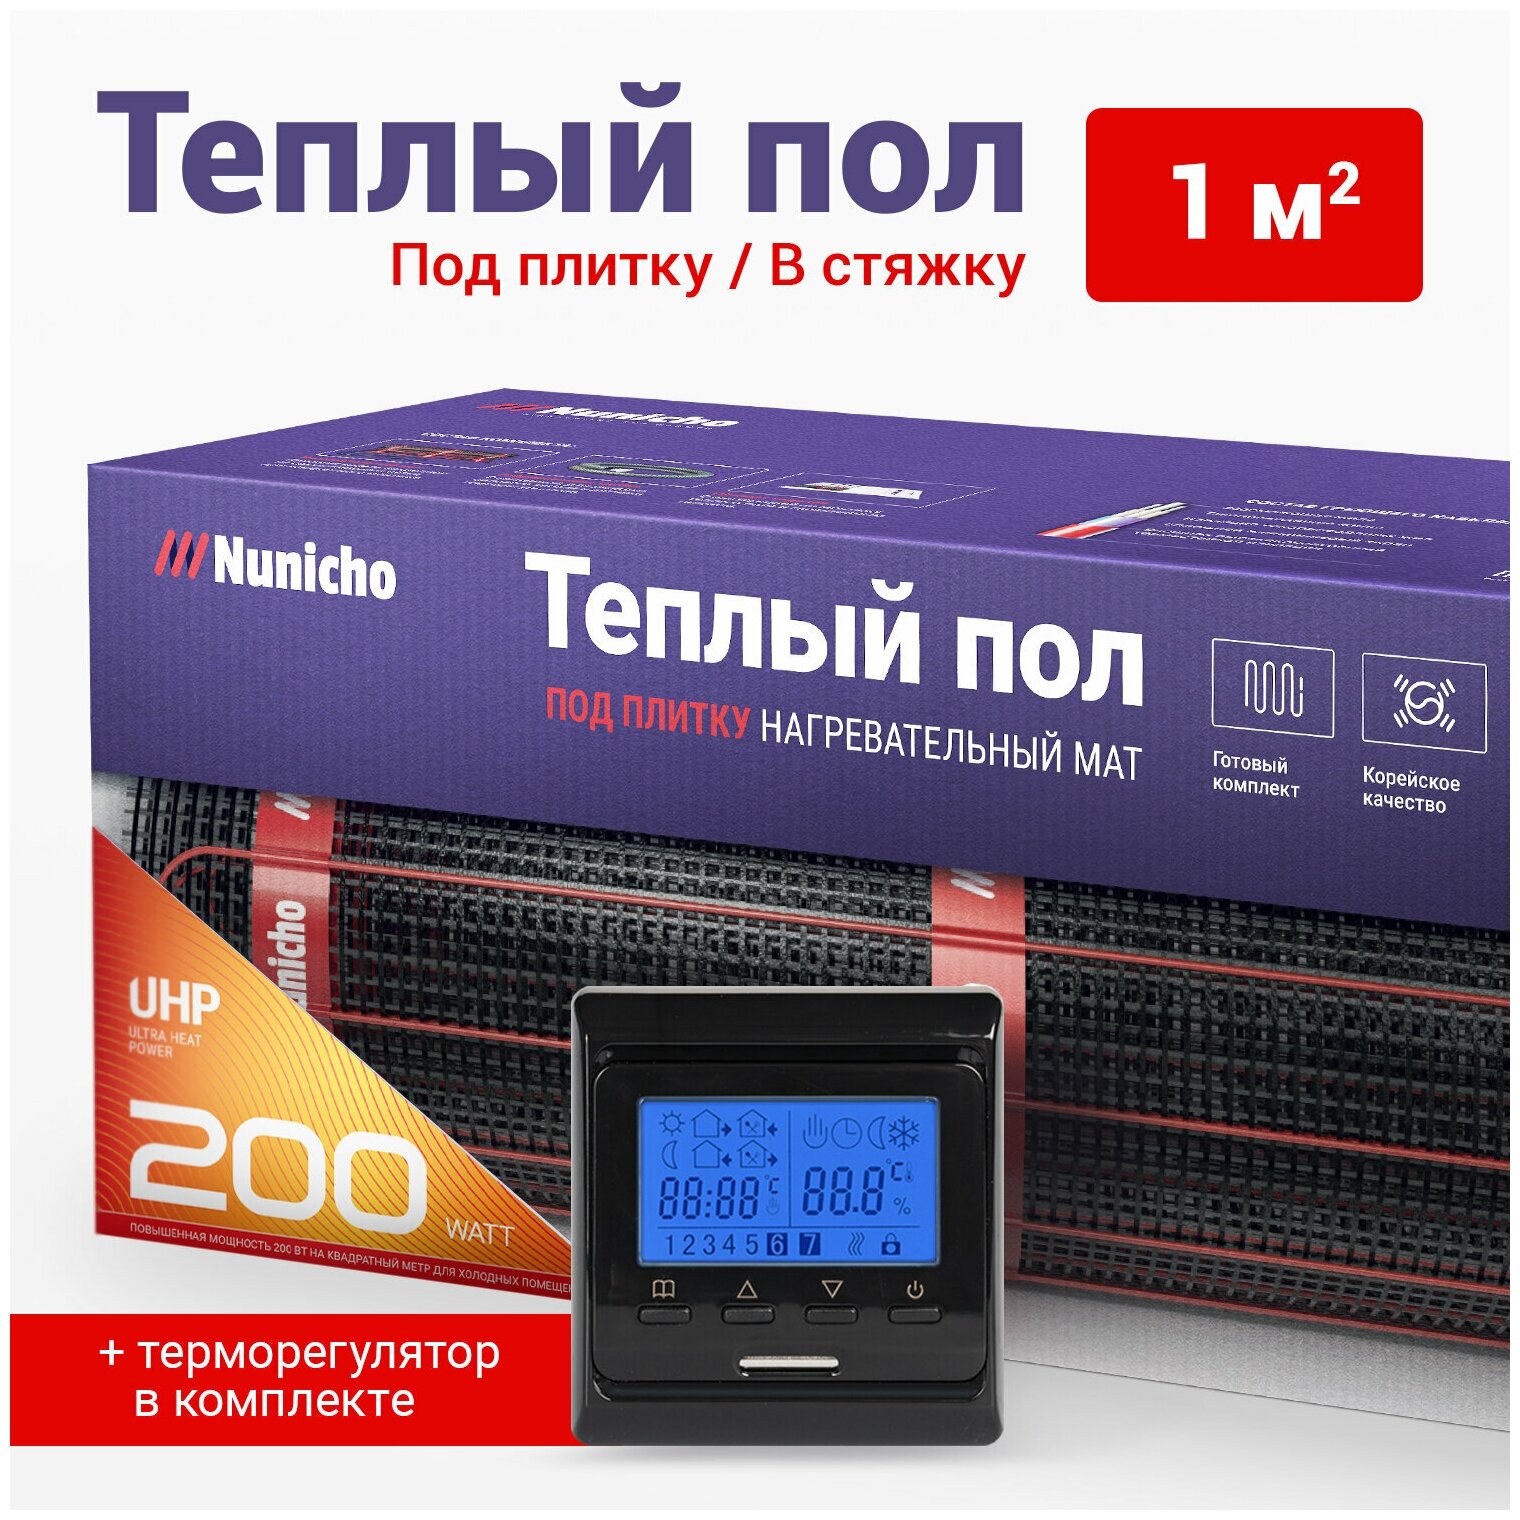 Теплый пол электрический под плитку 1 м2 Nunicho 200 Вт/м2 с терморегулятором программируемым черным, нагревательный мат